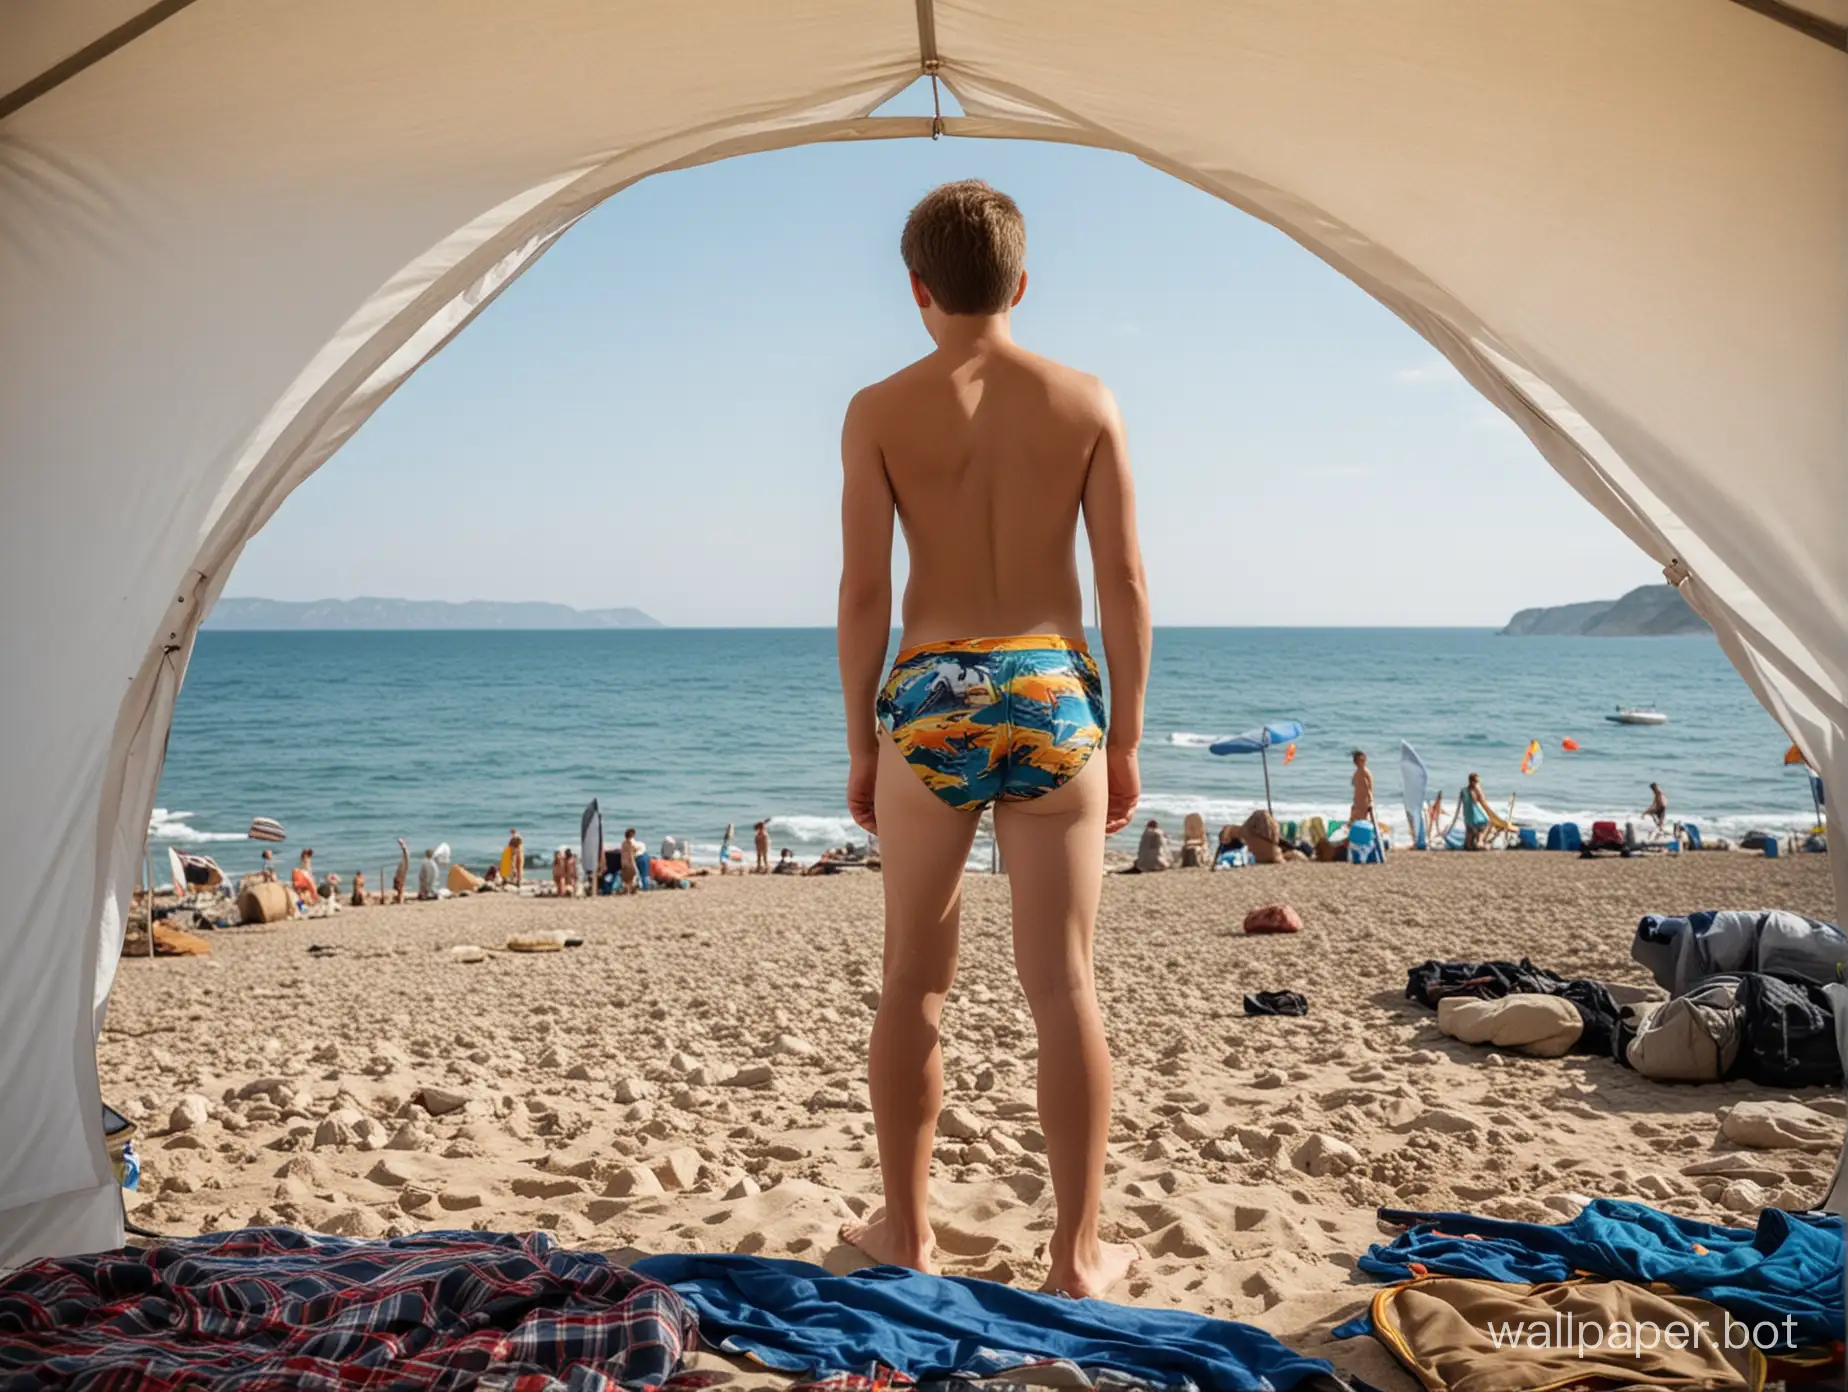 Крым, палатка, море вдалеке, палатки вдалеке, мальчик 13 лет в плавках, поясное изображение, кокетство, люди, стринги